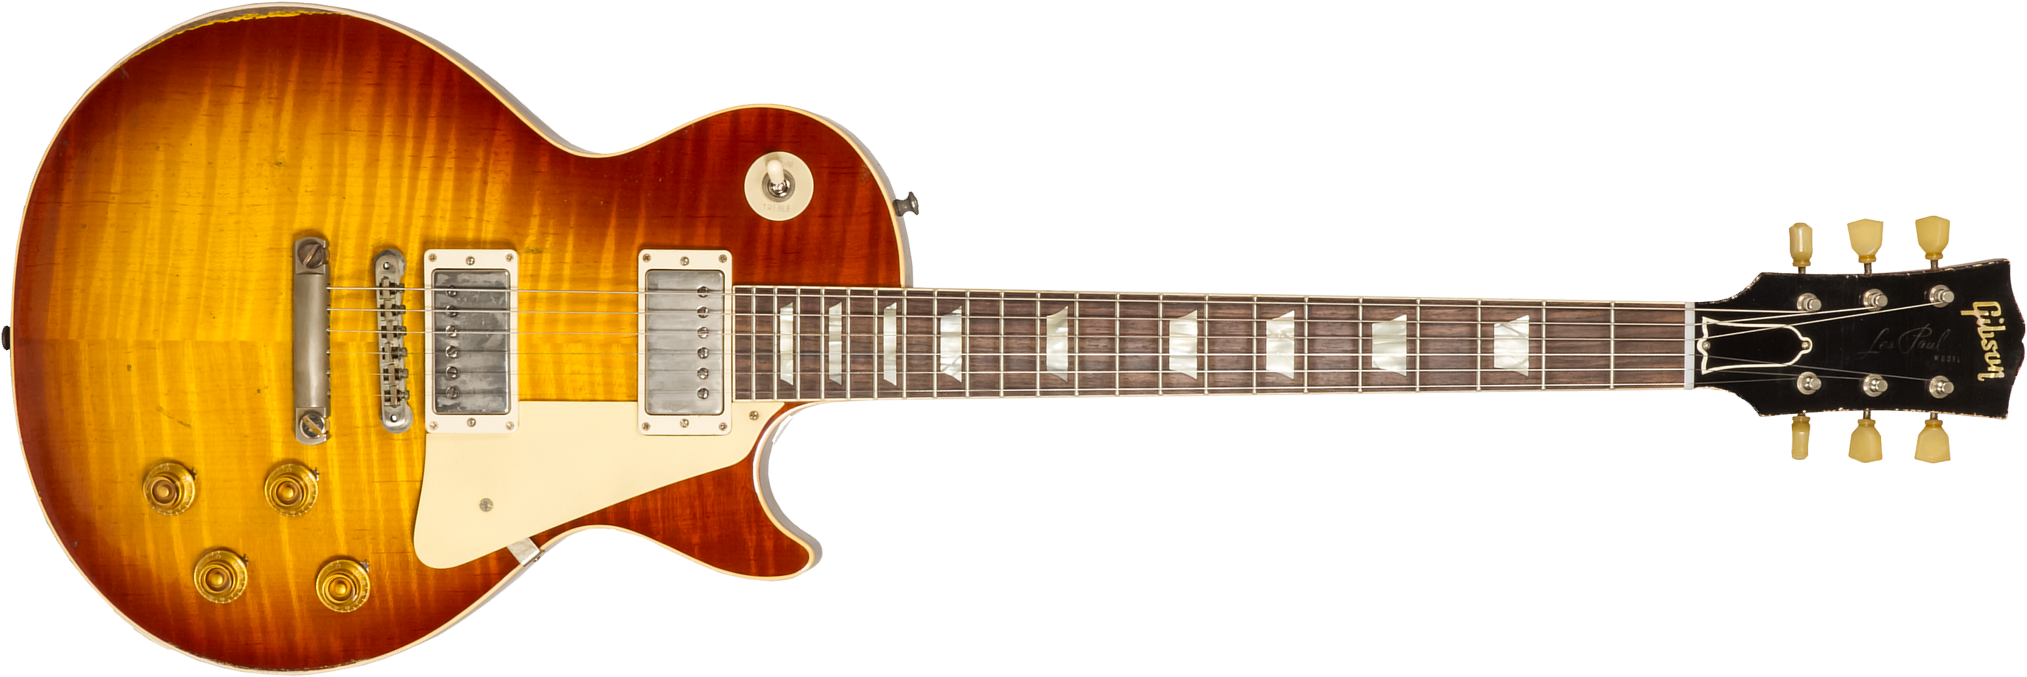 Gibson Custom Shop M2m Les Paul Standard 1959 Reissue 2h Ht Rw #932156 - Ultra Heavy Aged Iced Tea Burst - Guitare Électrique Single Cut - Main pictur